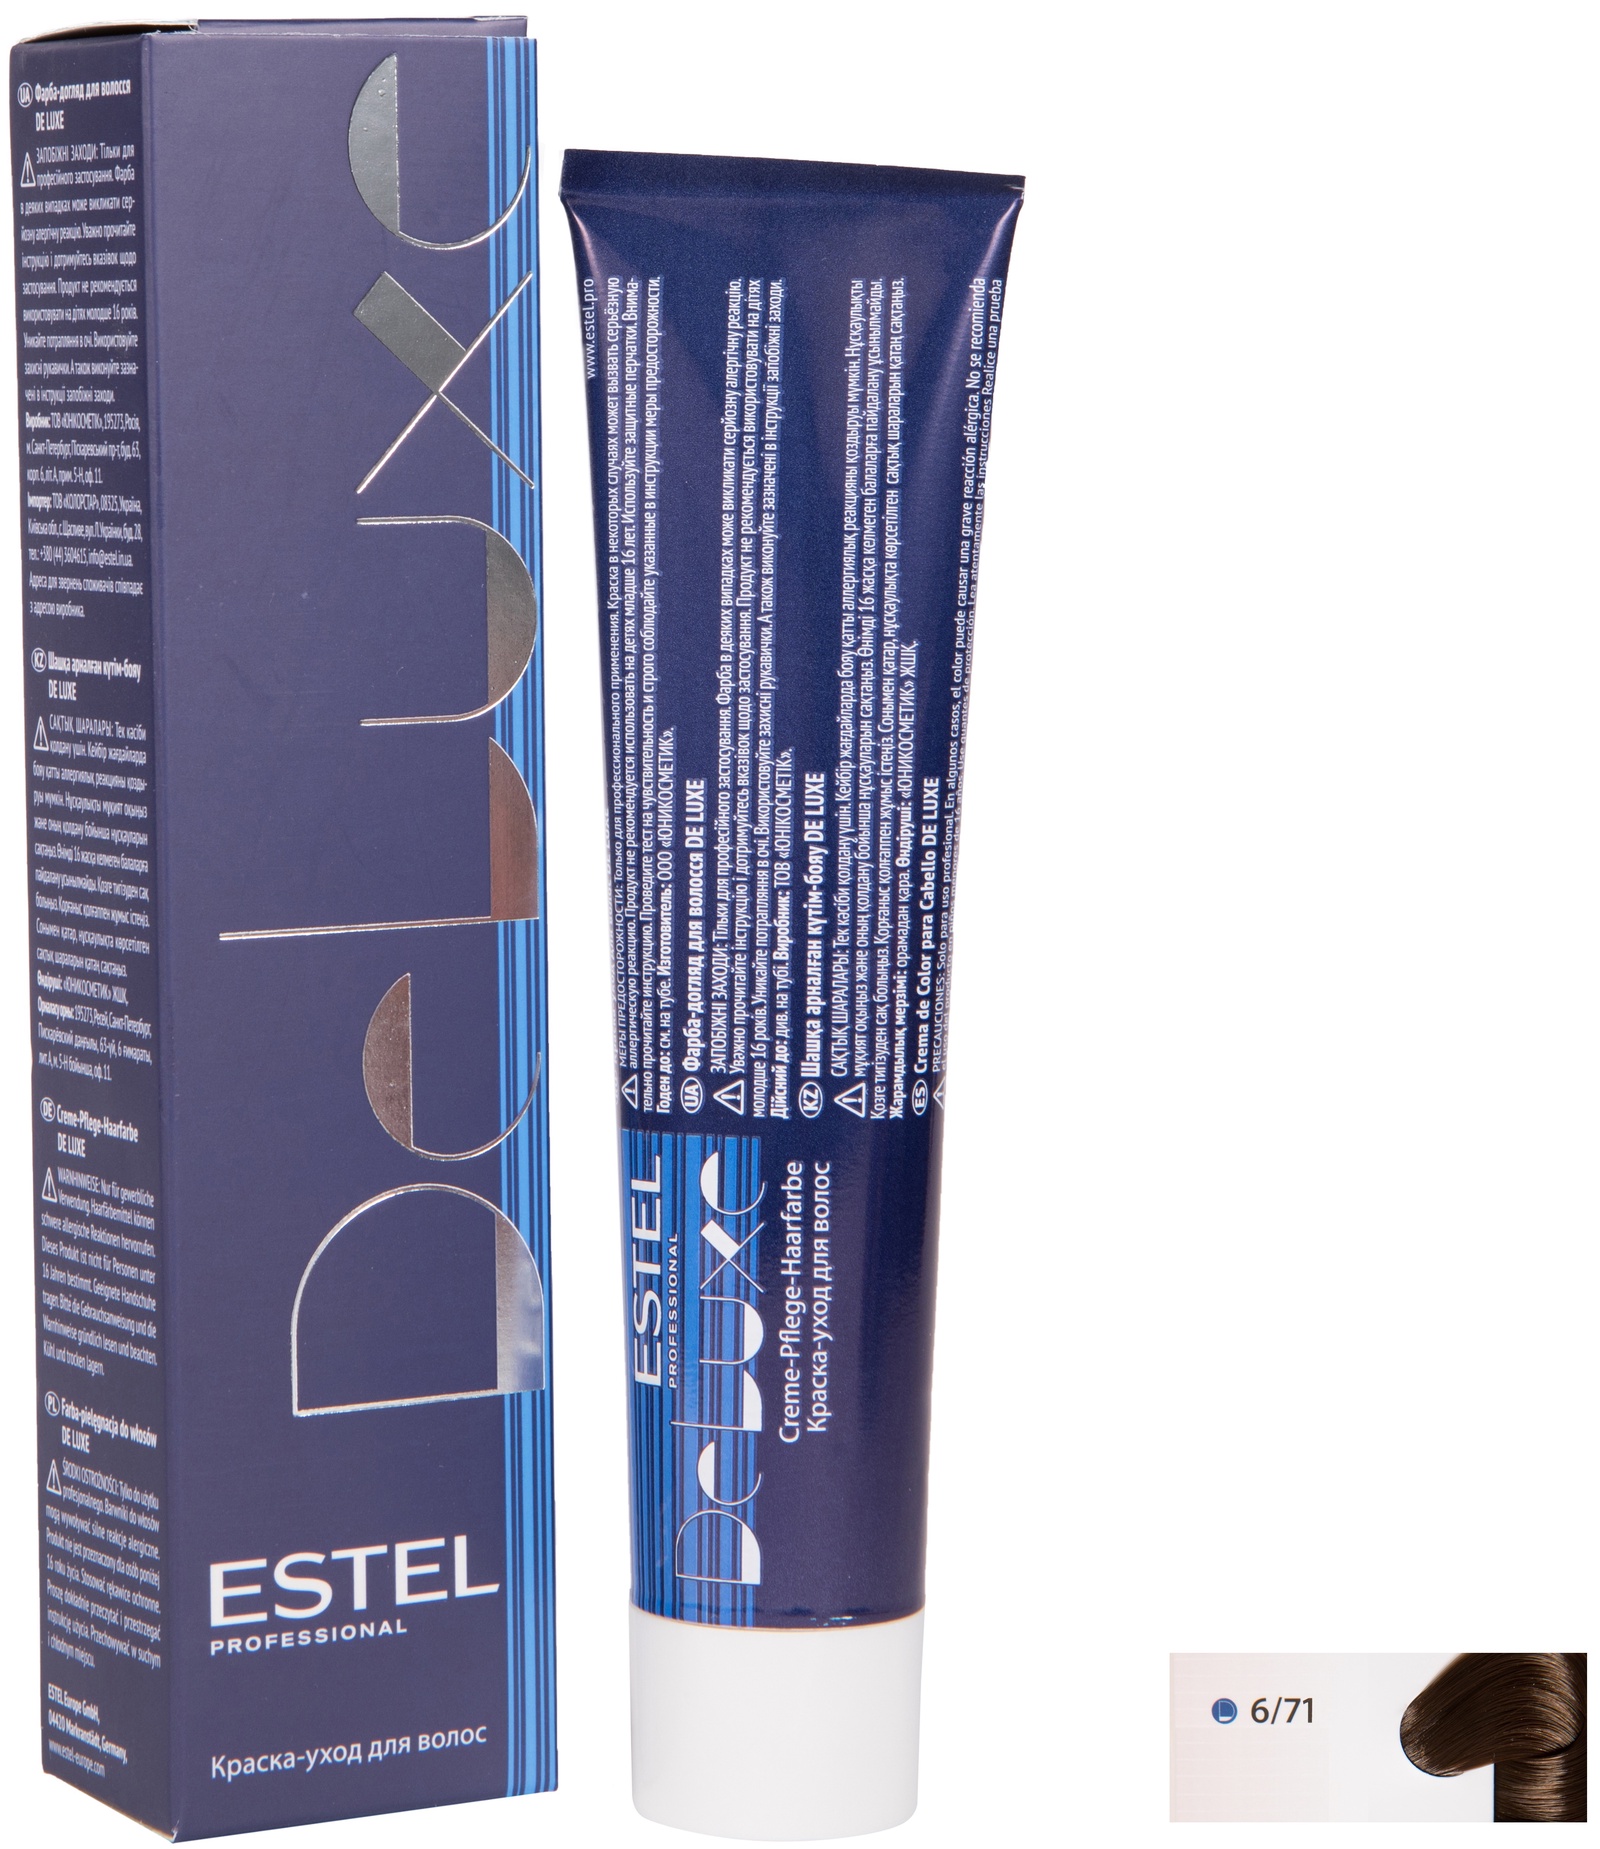 Краска для волос ESTEL PROFESSIONAL 6/71 DE LUXE краска-уход для окрашивания волос, темно-русый коричнево-пепельный 60 мл